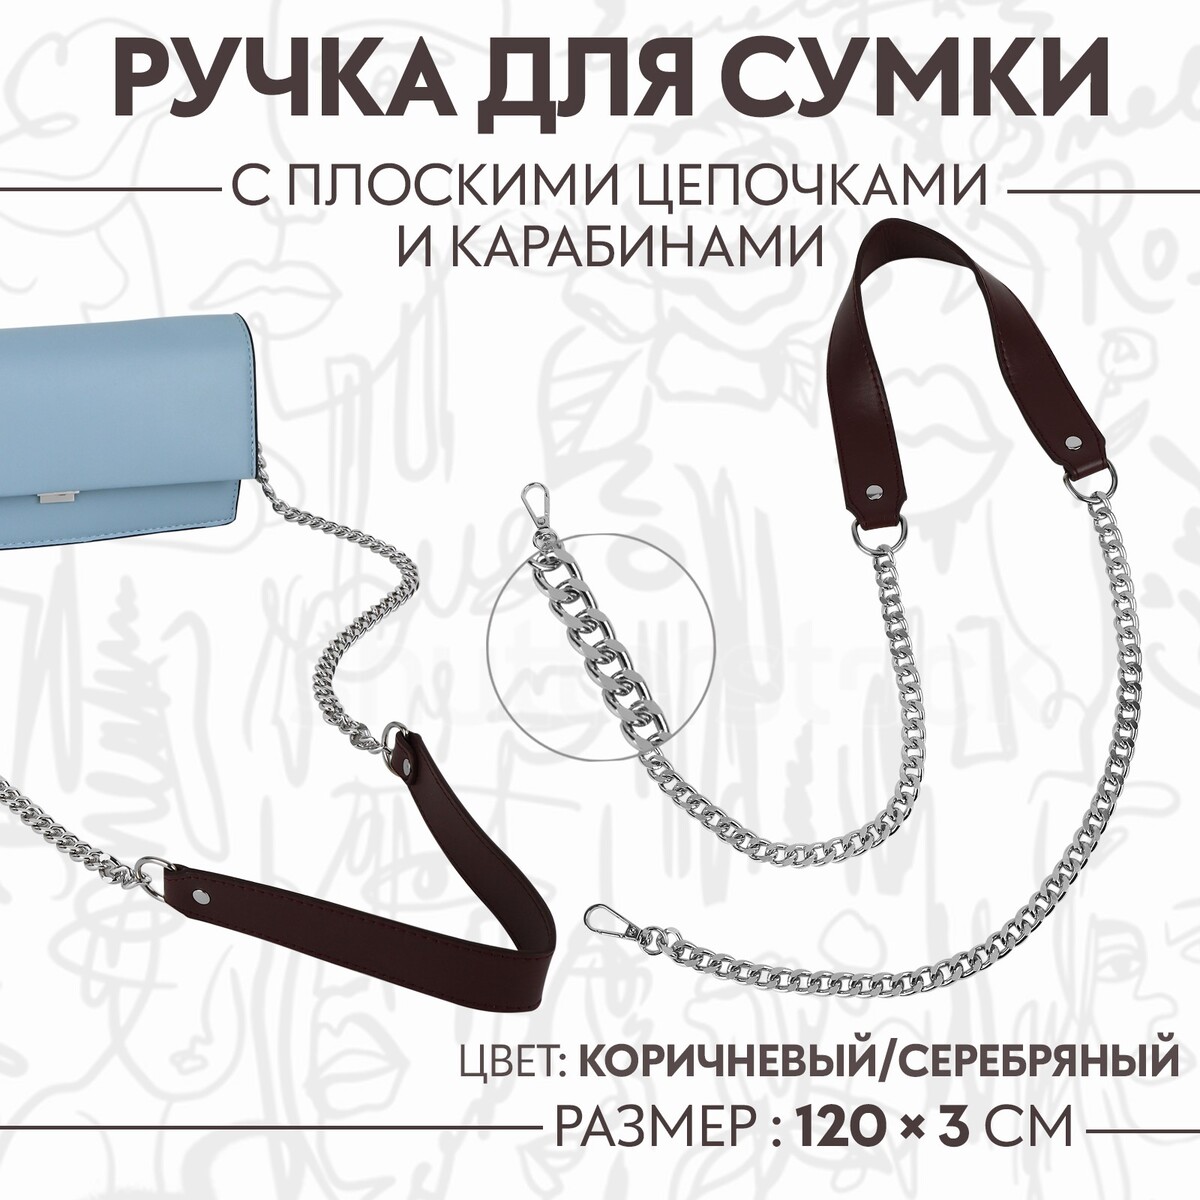 Ручка для сумки, с плоскими цепочками и карабинами, 120 × 3 см, цвет коричневый/серебряный ручка для сумки канат 60 × 1 5 см с карабинами кремовый серебряный